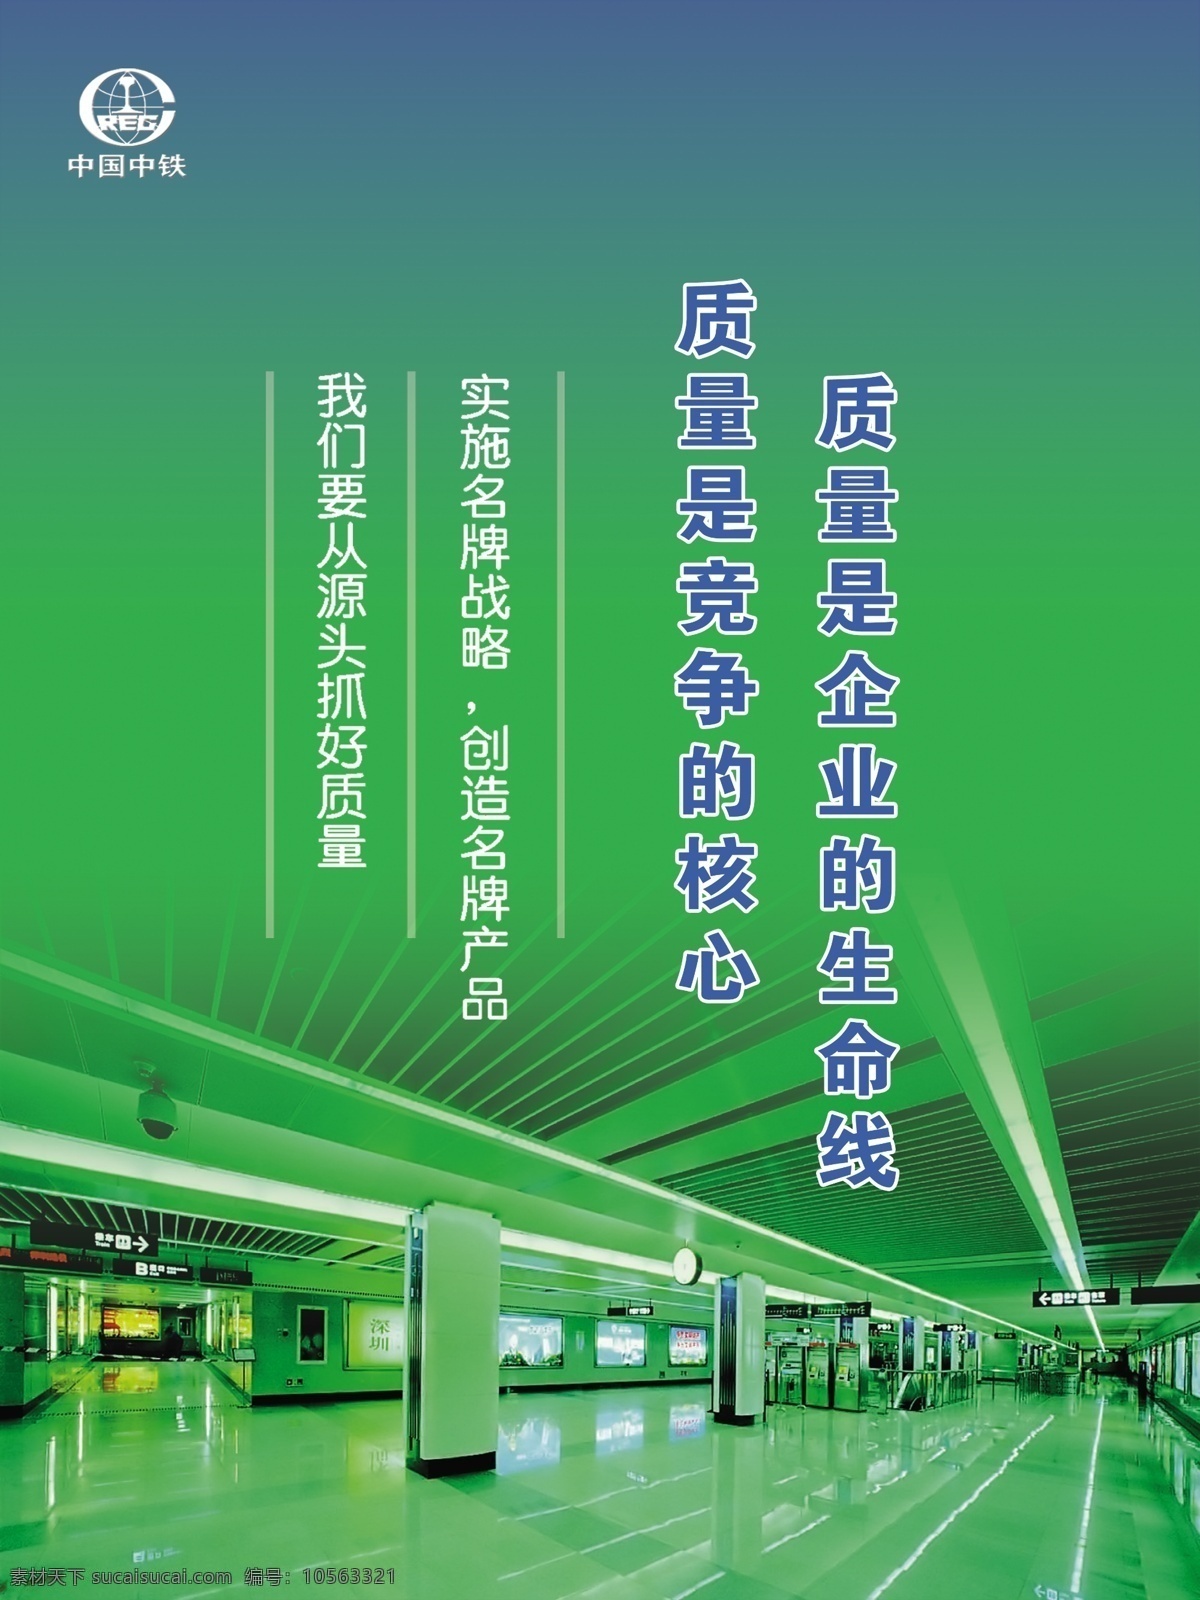 企业 理念 之一 质量 厅 绿色调 中国中铁徽 企业宣传画 分层 源文件